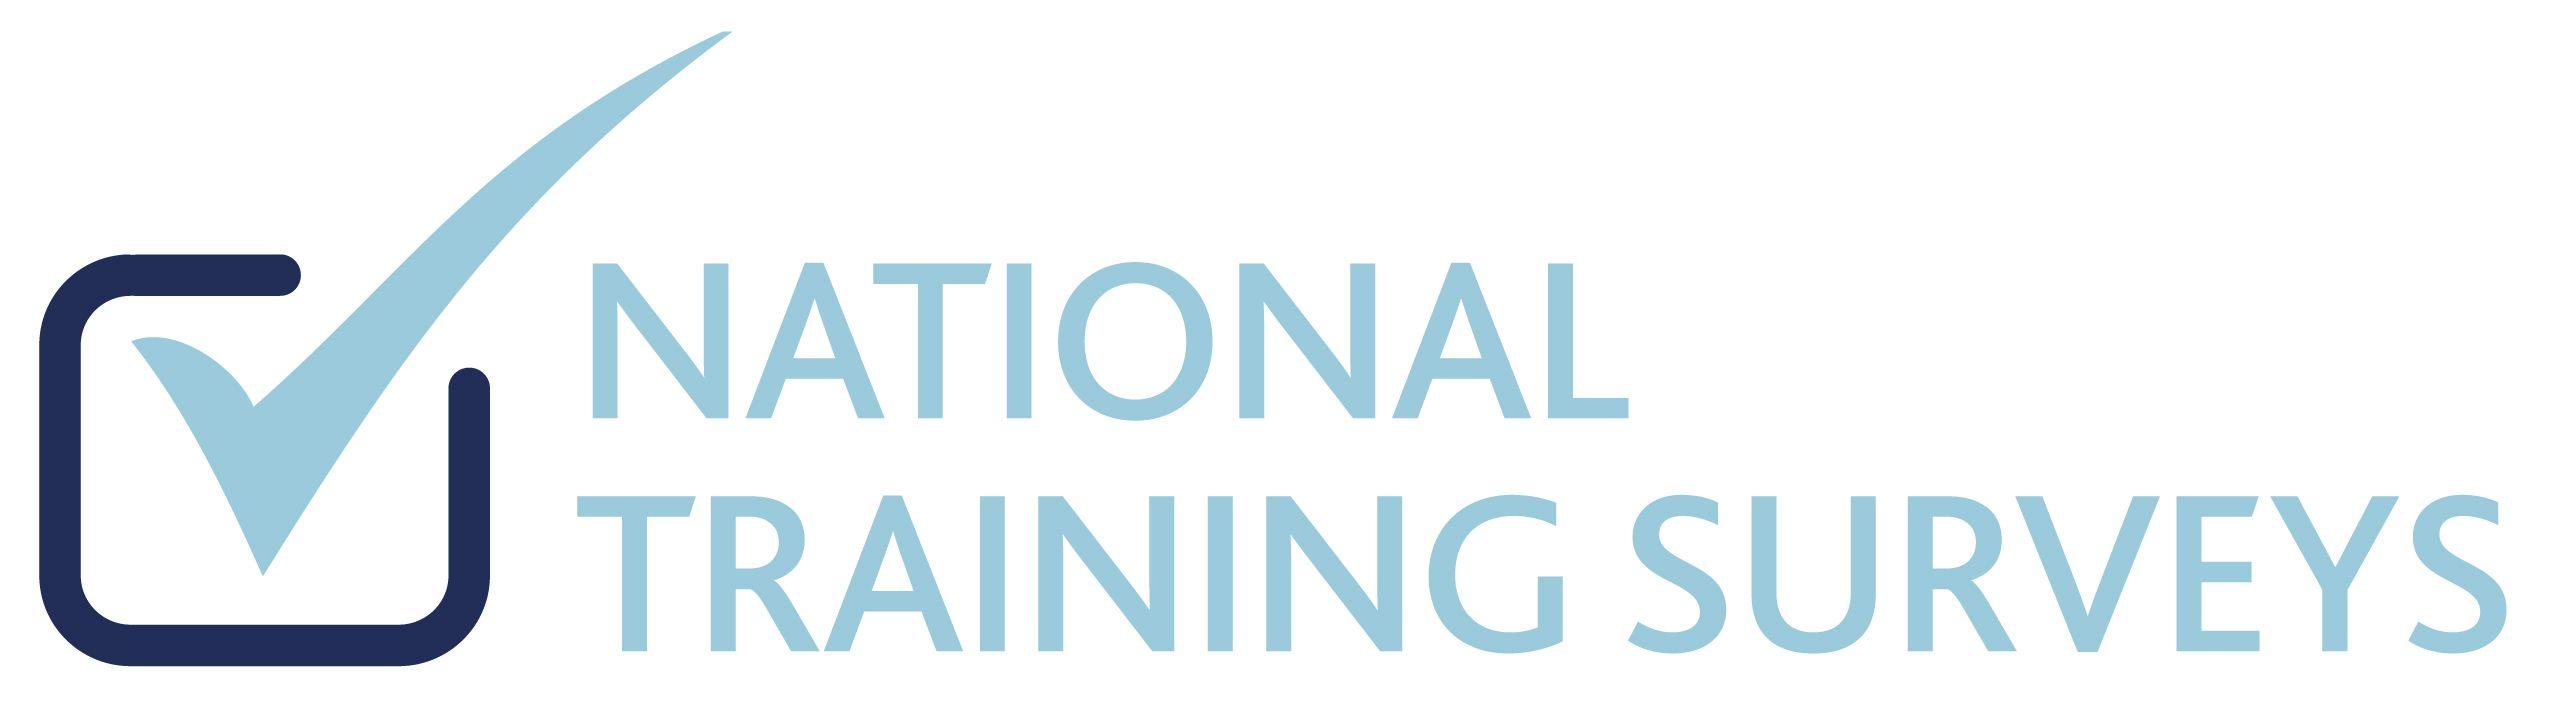 Turquoise GMC Logo - GMC National Training Survey 2017 | Health Education England